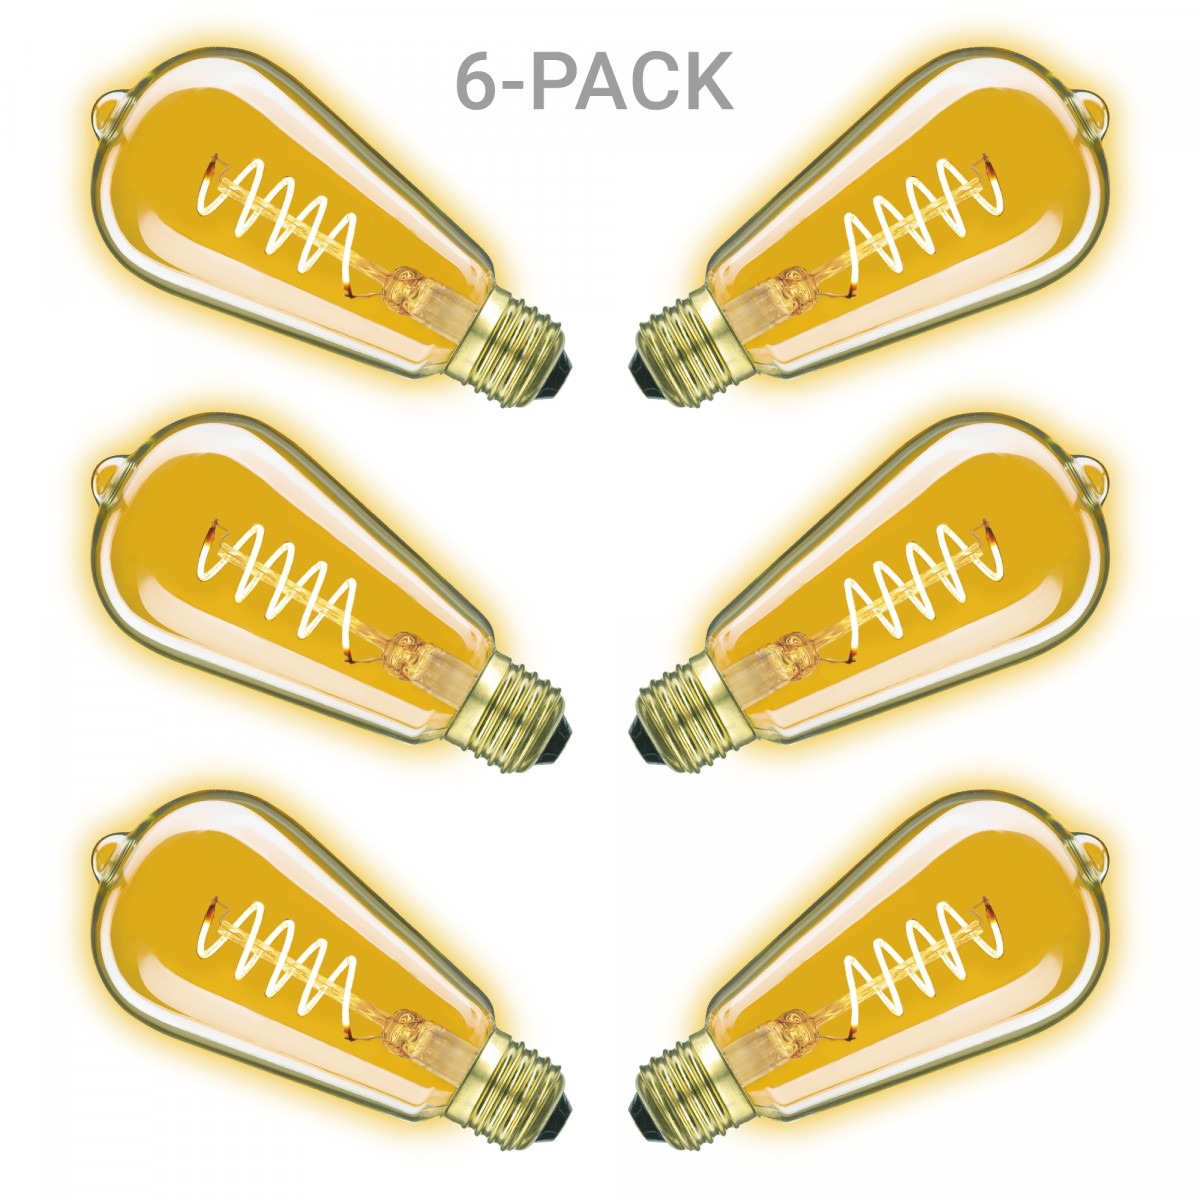 Pack de 6 ampoules Rustic Spiral LED 3,5W (6x5895) | Nostalux.fr